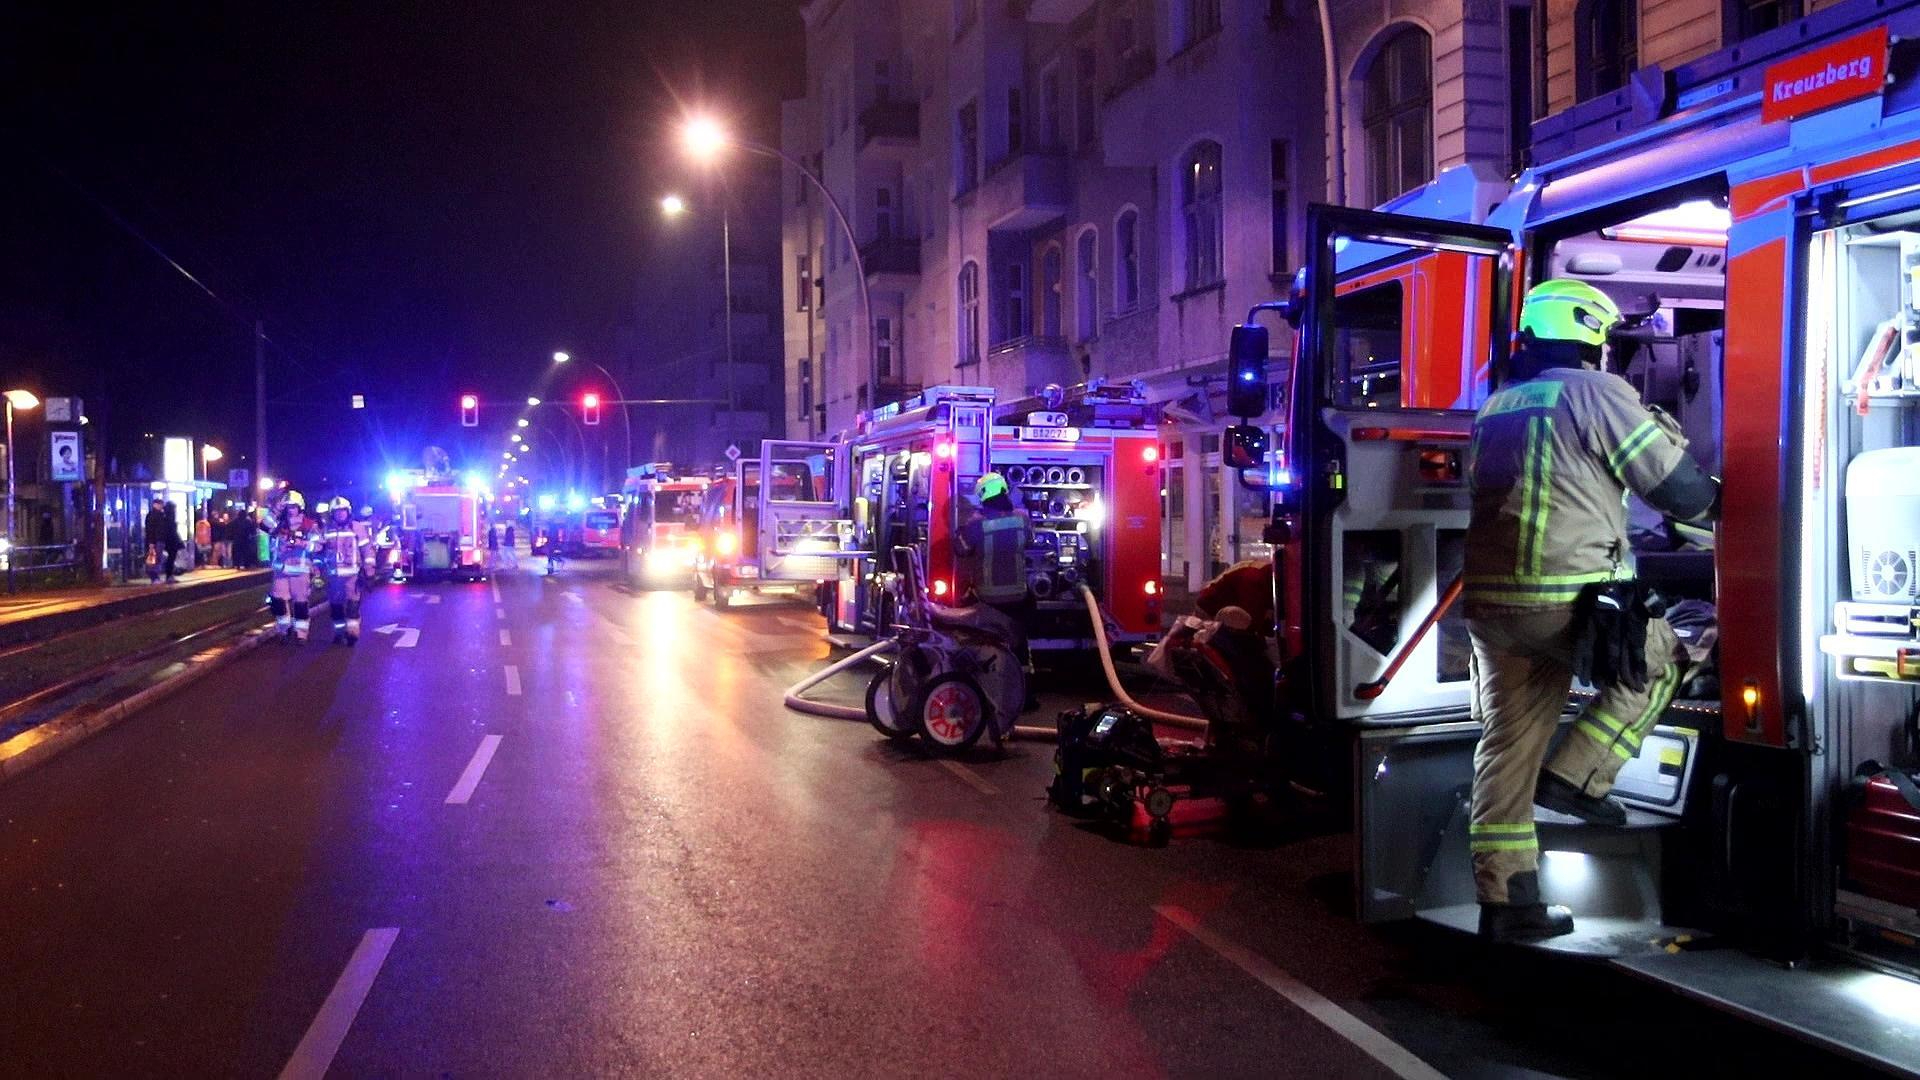 Bei einem Hausbrand in Berlin sind vier Menschen verletzt worden. (Quelle: Pudwell)